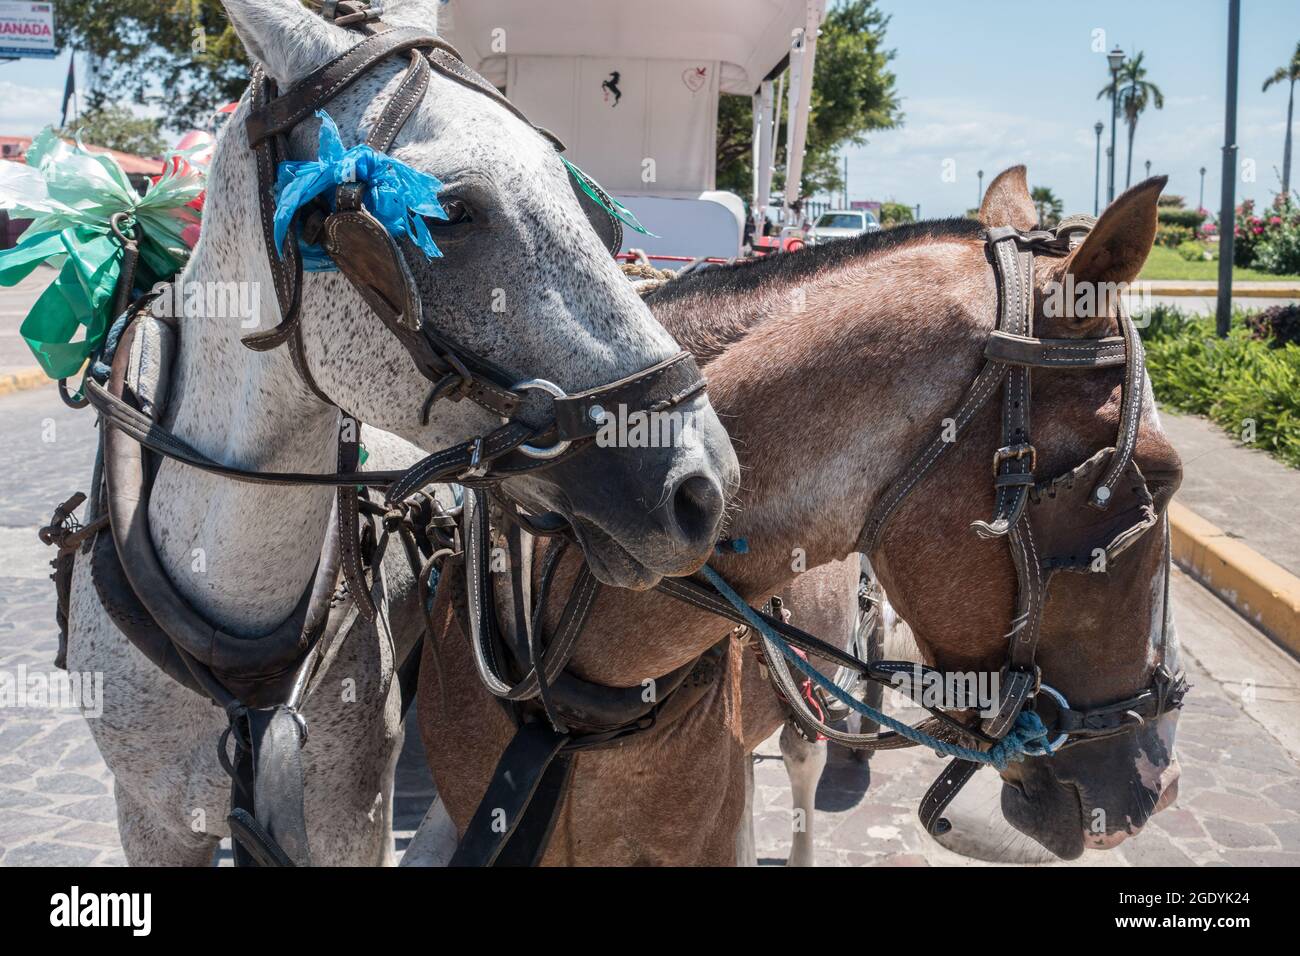 Primer plano de dos caballos de trabajo (Equus ferus) que tiran de un carruaje turístico en Granada, Nicaragua. Foto de stock